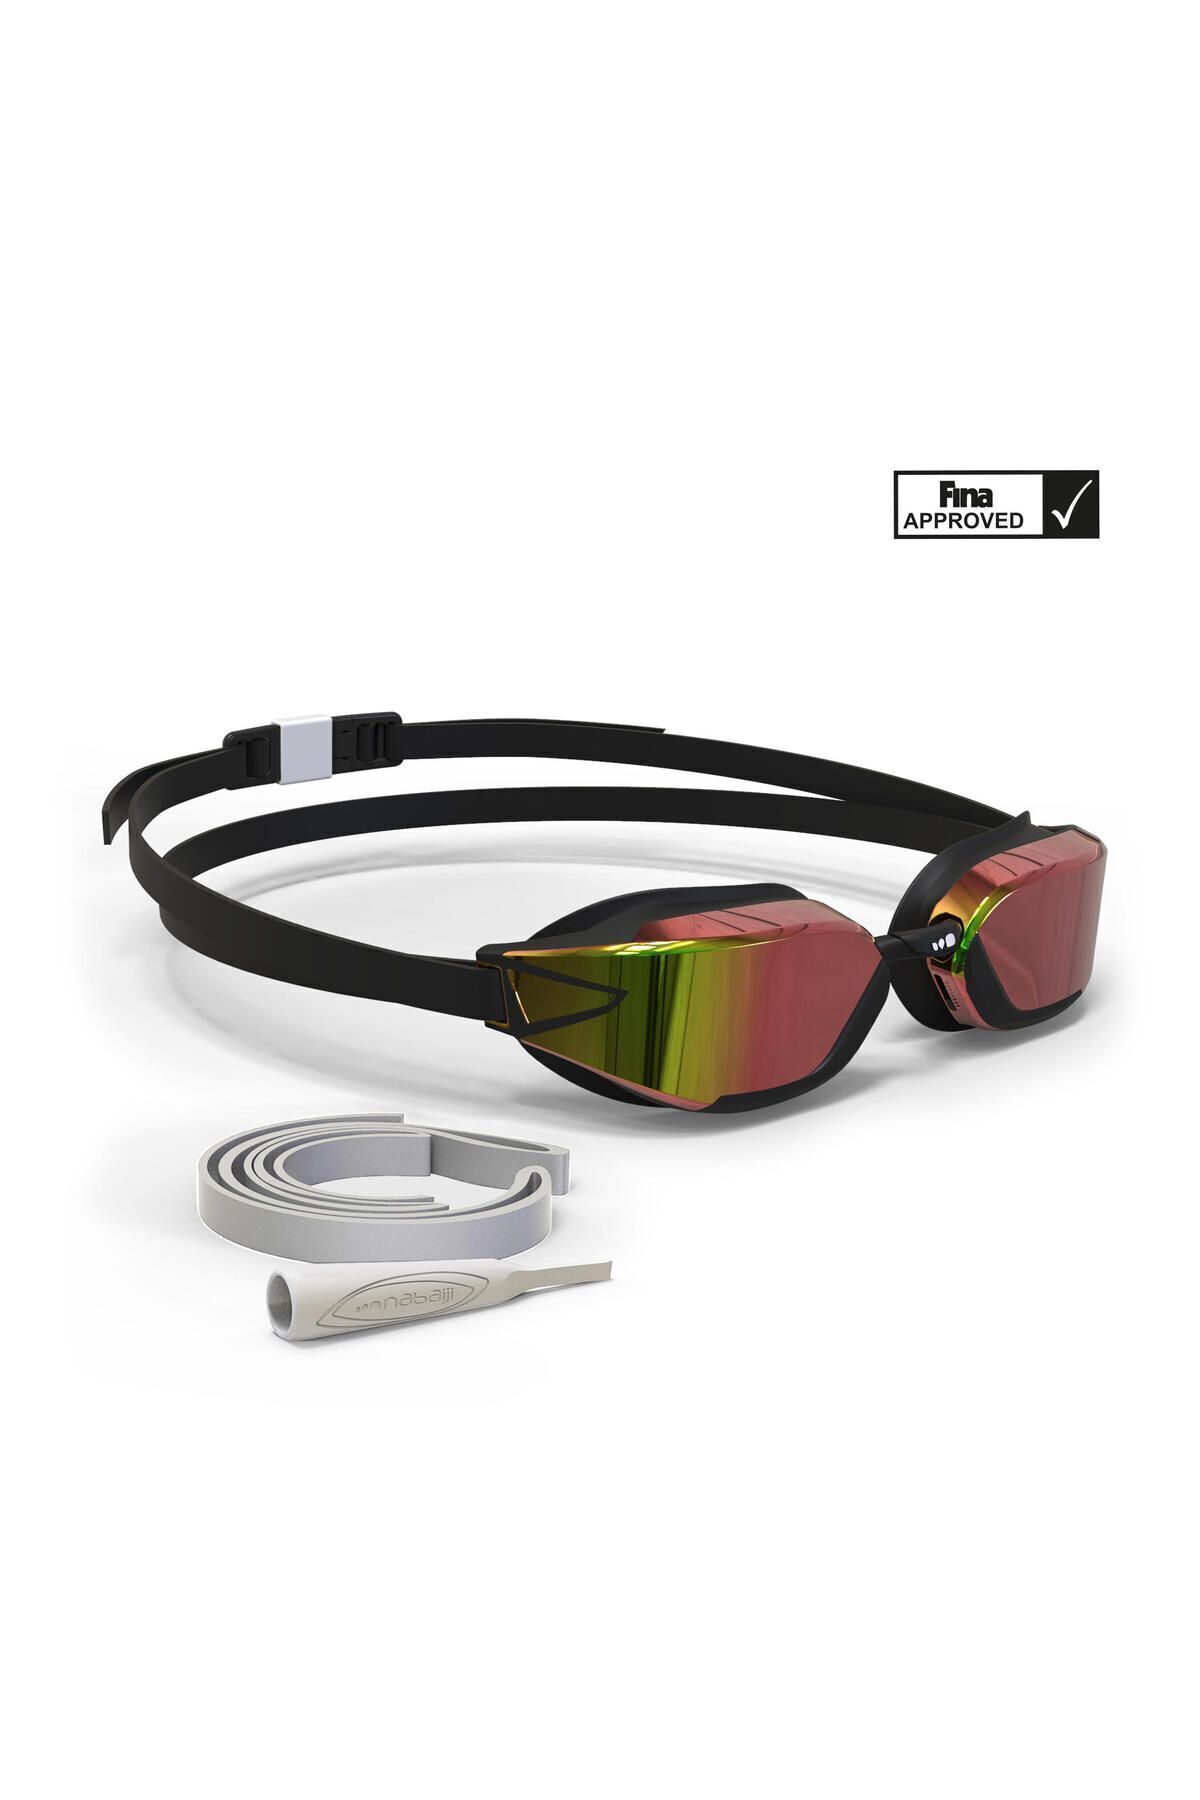 Decathlon Yüzücü Gözlüğü - Siyah / Kırmızı / Aynalı Camlar - B-fast 900